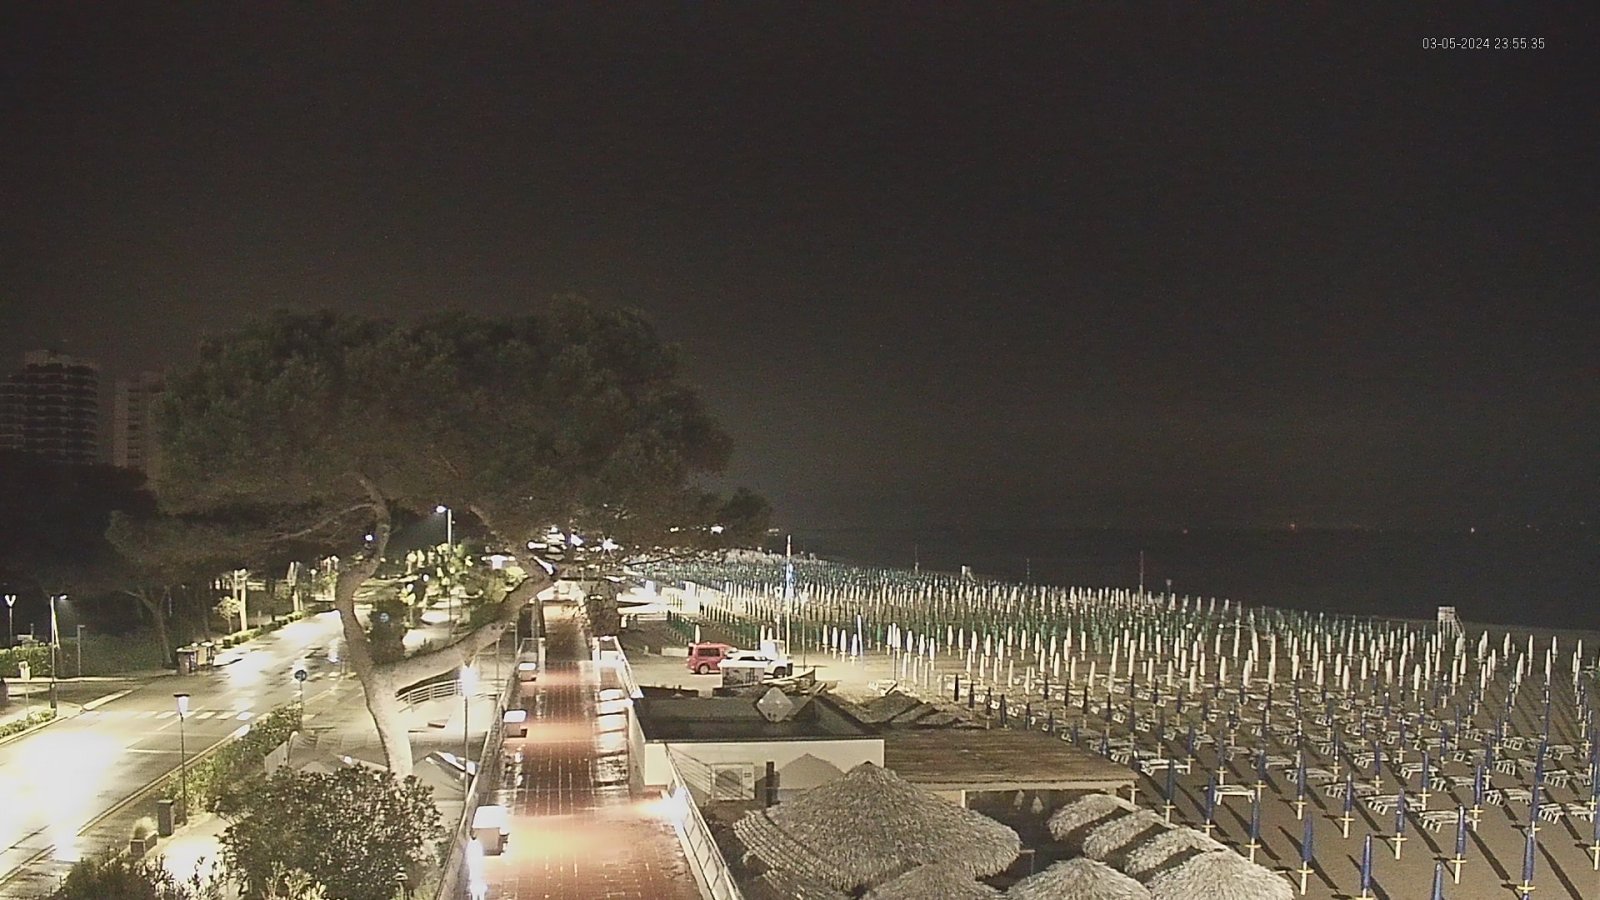 Immagine webcam con vista sulla spiaggia e ombrelloni